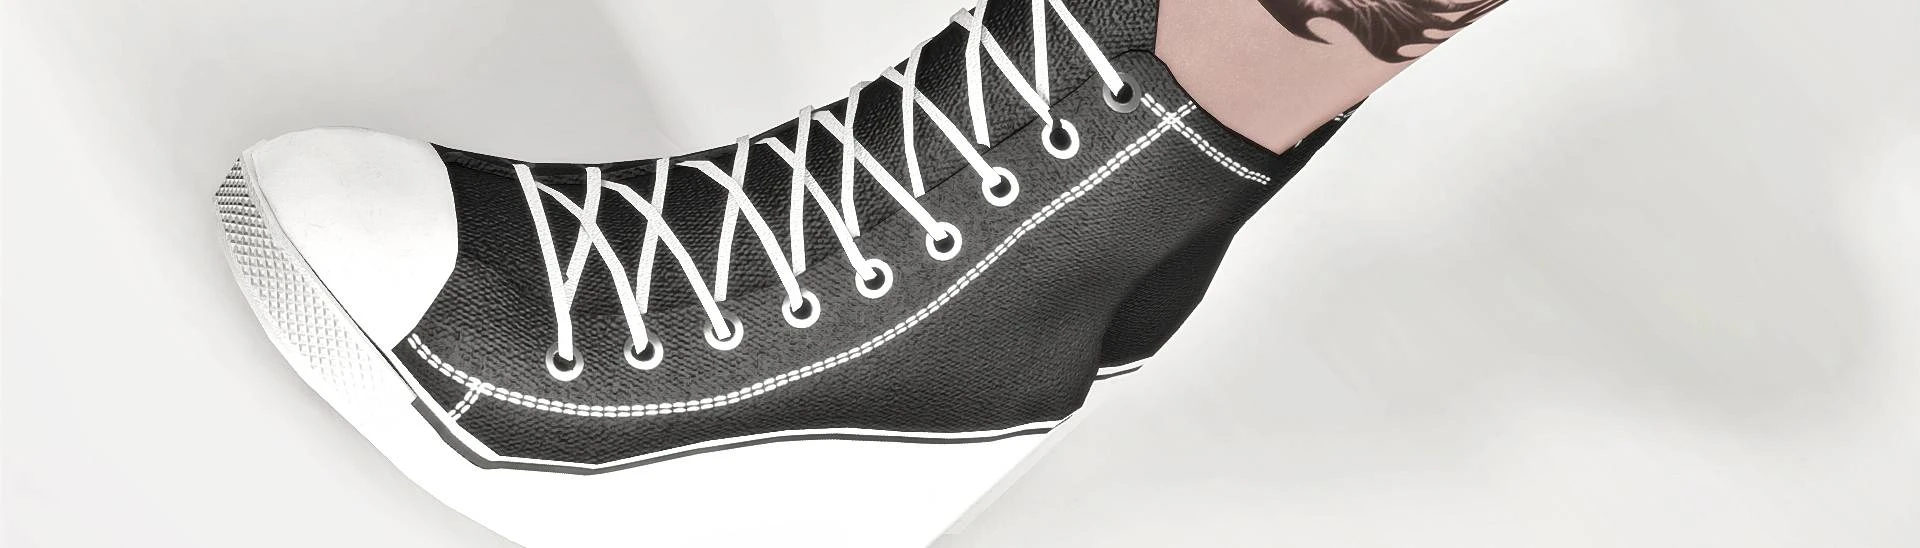 Converse Women's Heels | High heel sneakers, Casual high heels, Converse  heels